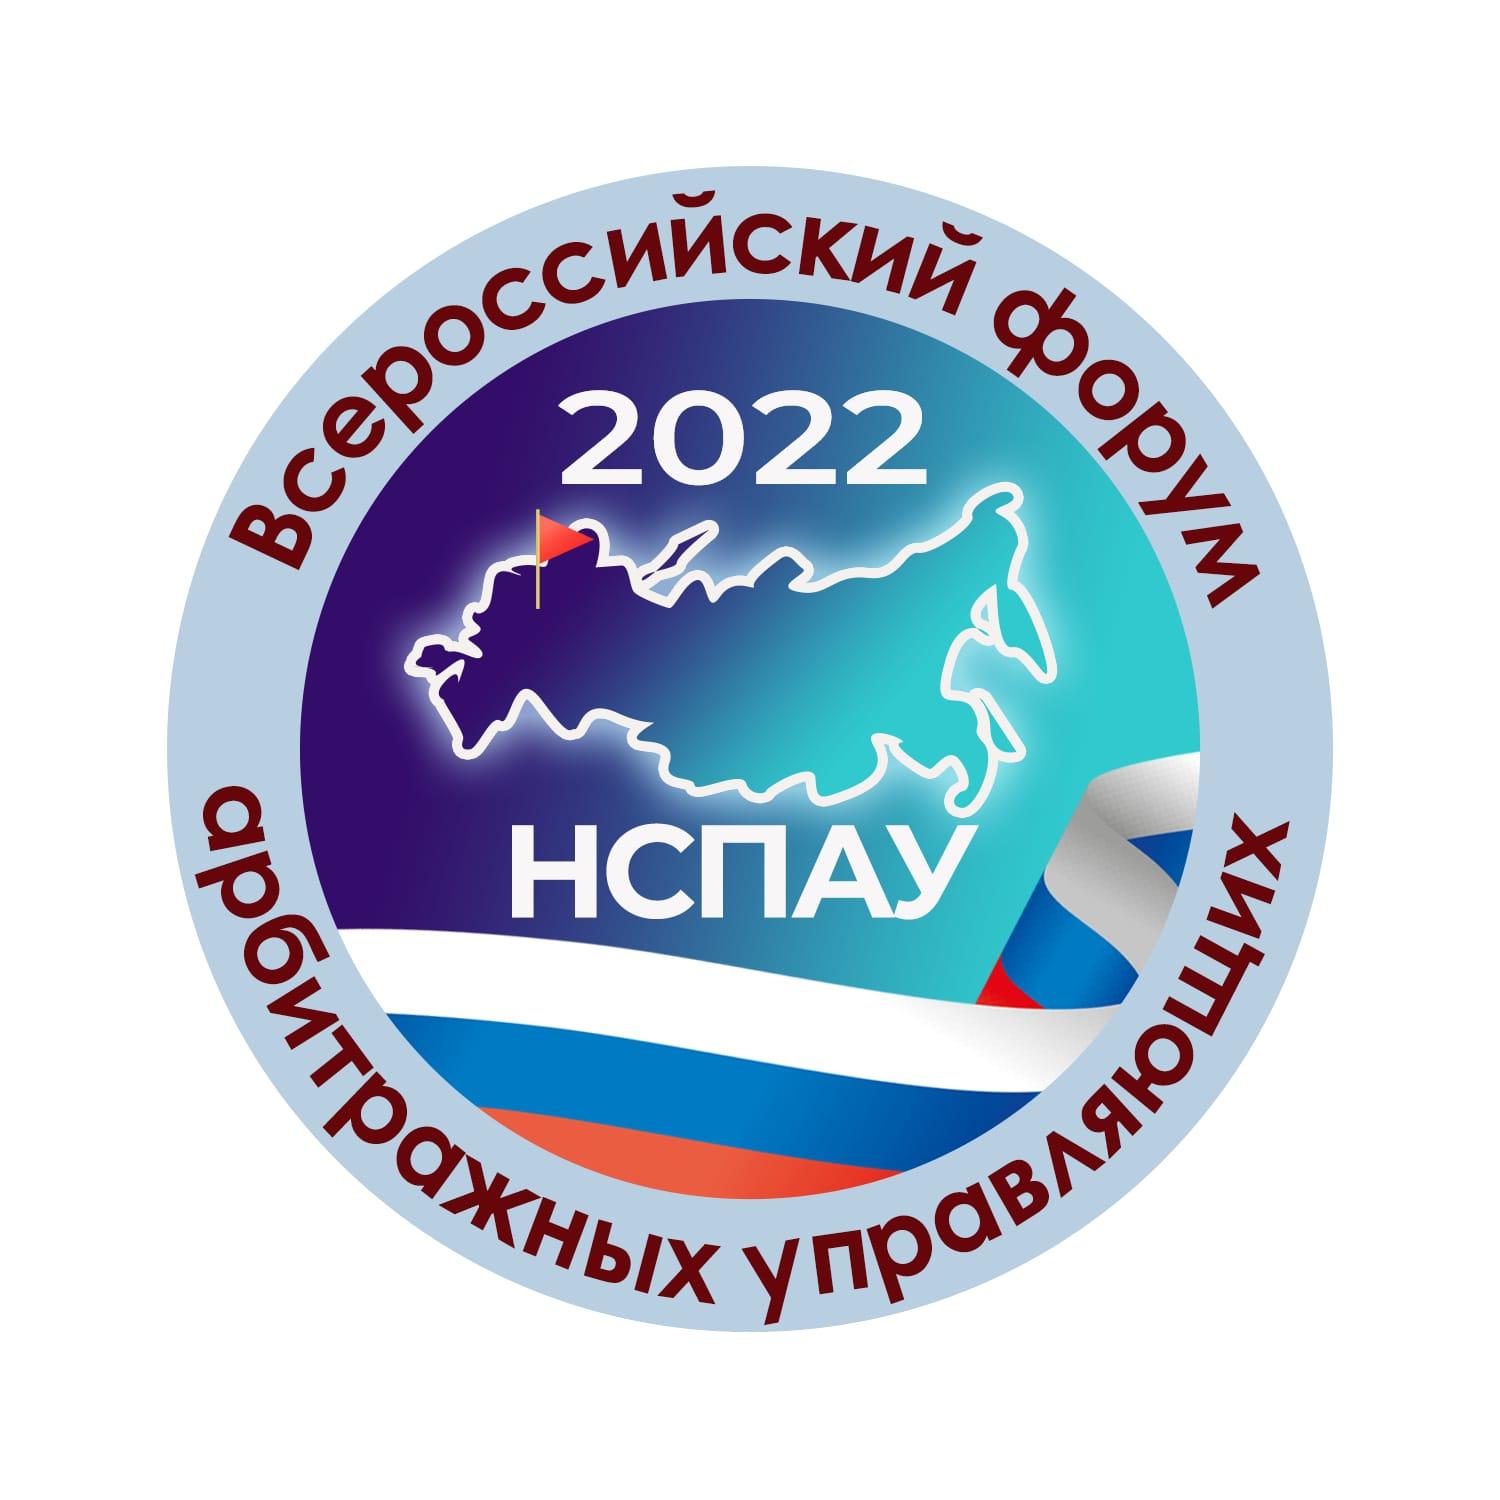 Стартовала регистрация на Всероссийский форум арбитражных управляющих 2022!